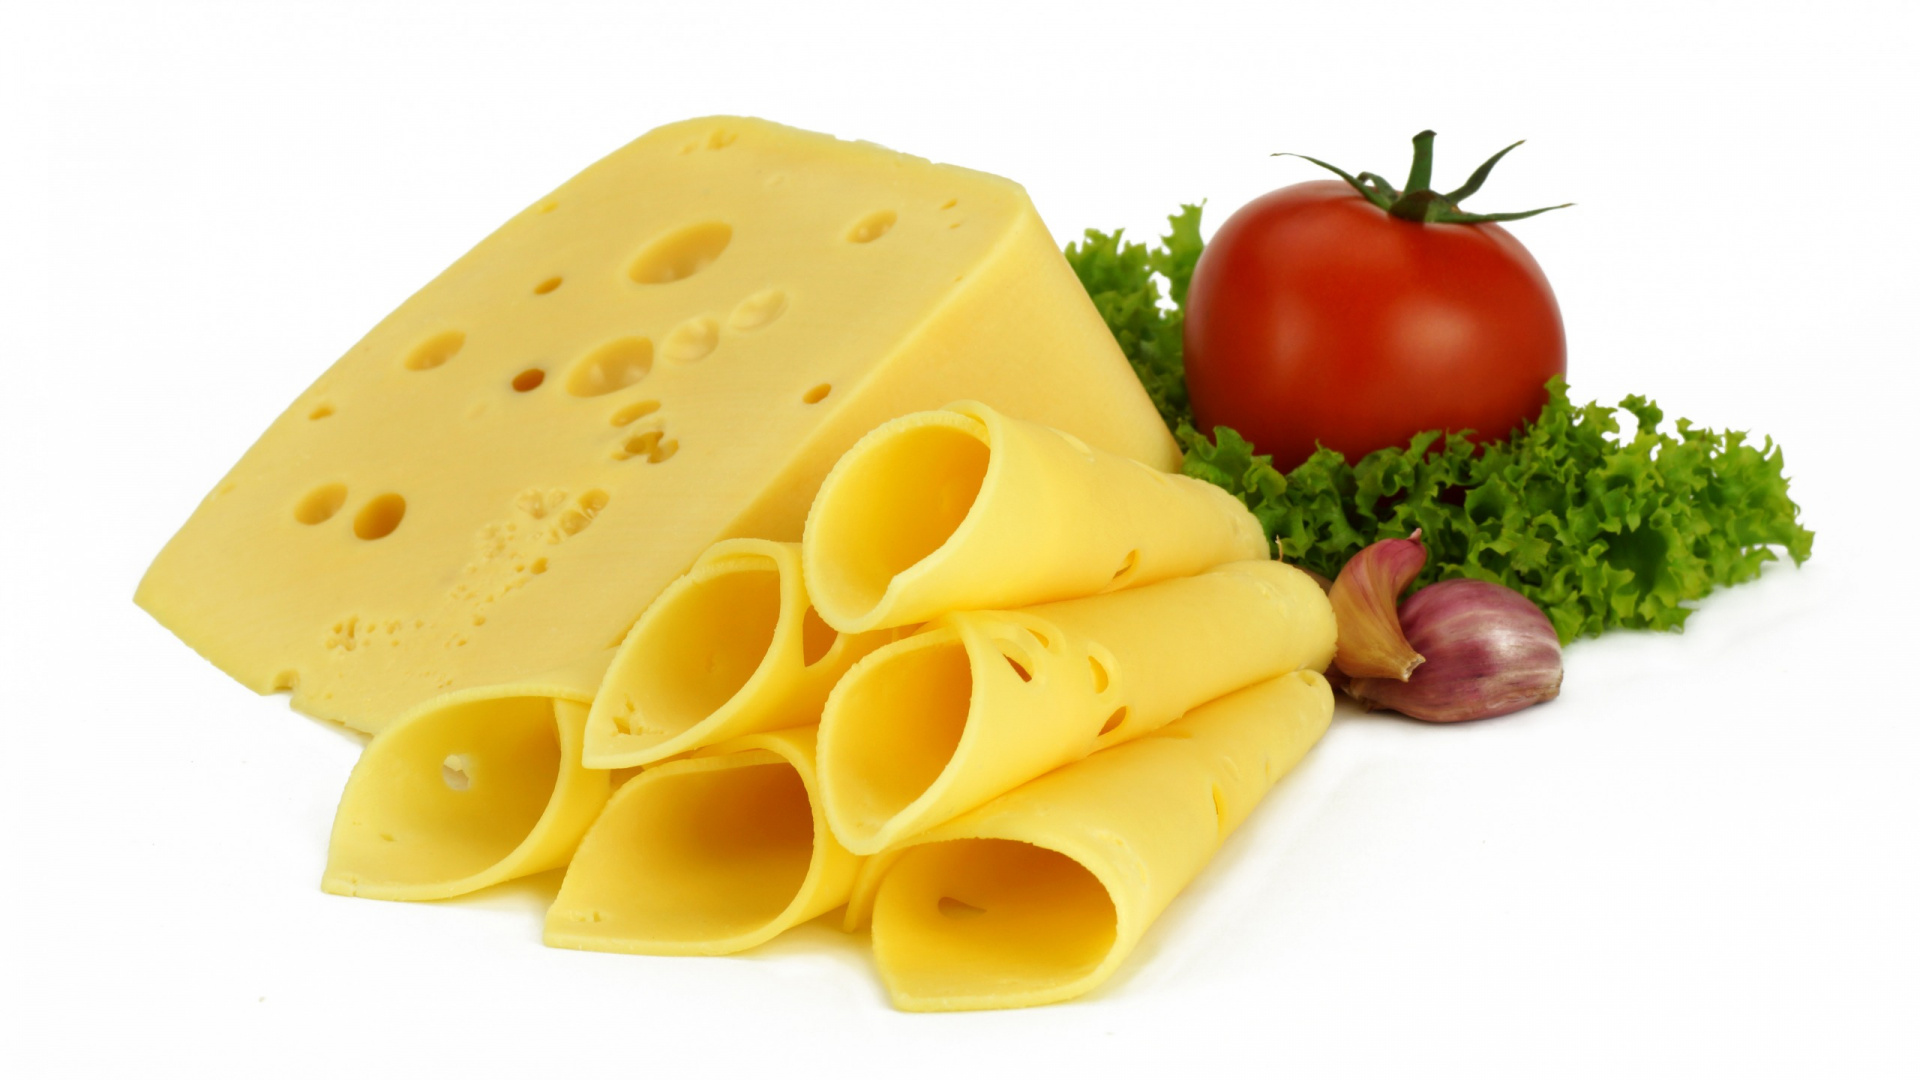 加工奶酪, 牛奶, 奶酪, 食品, 成分 壁纸 1920x1080 允许